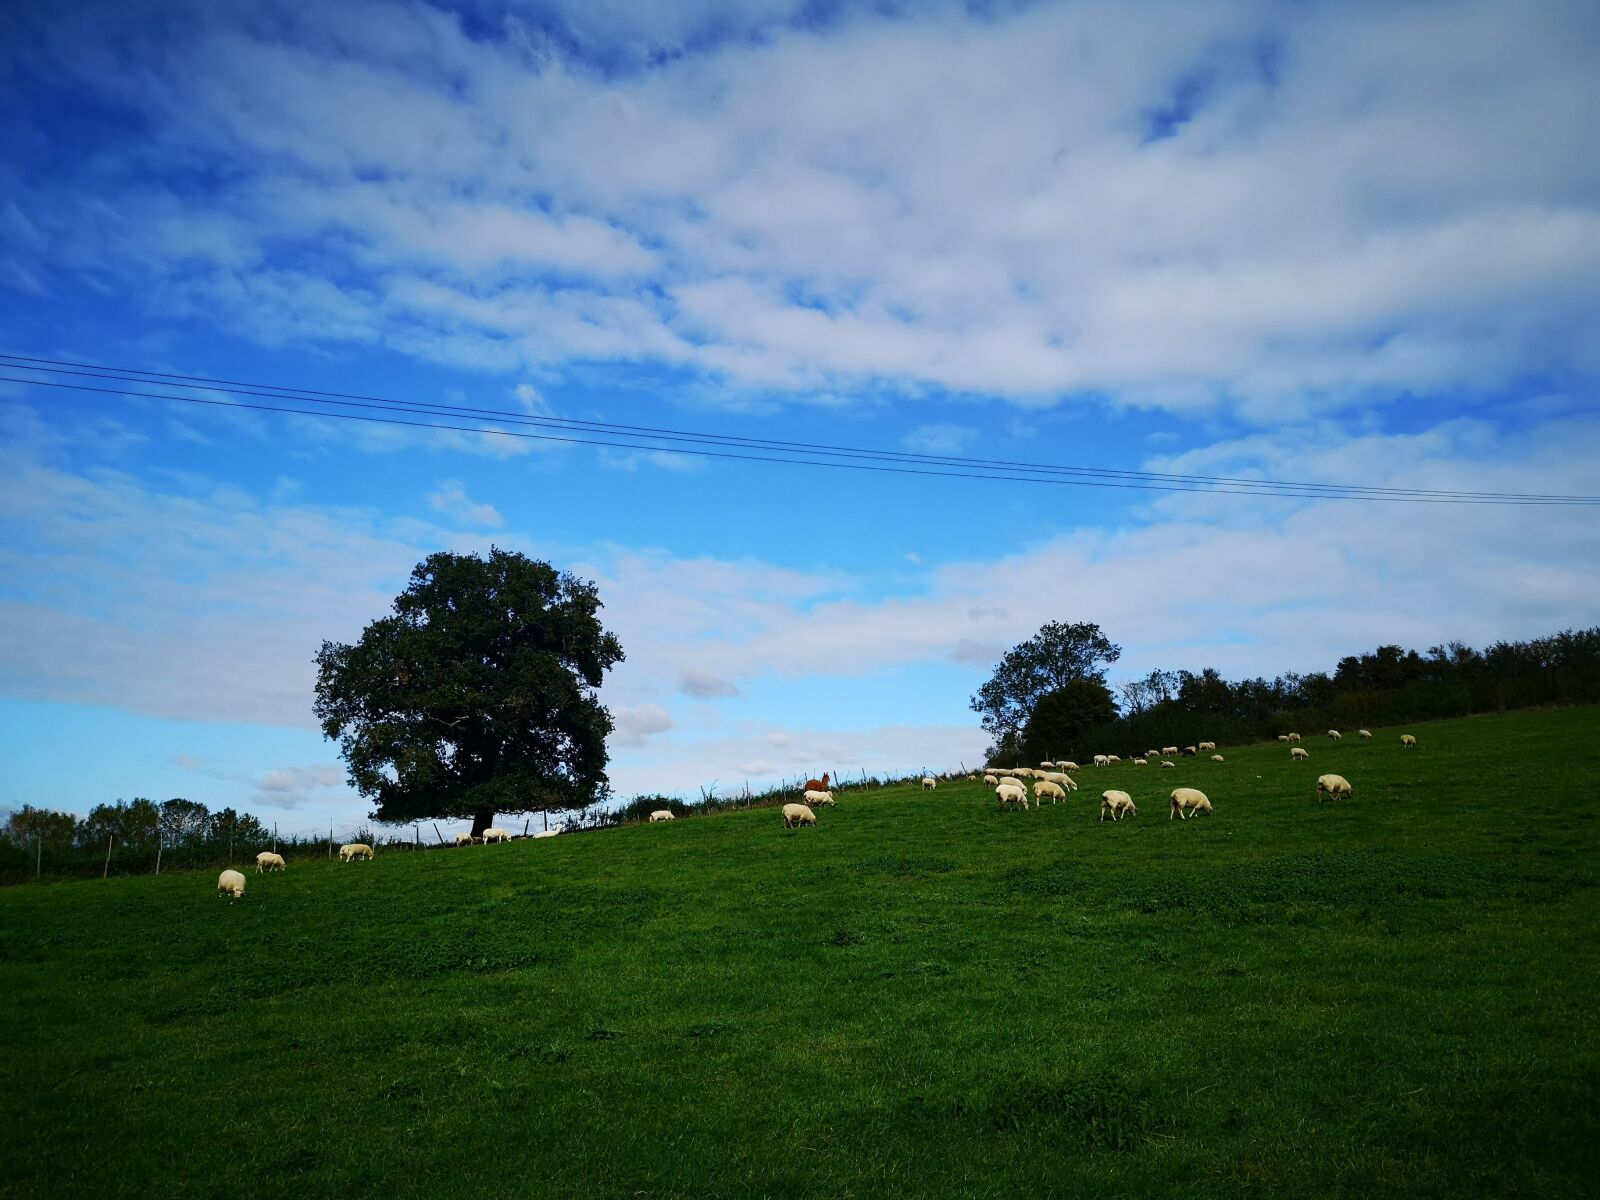 HUAWEI CLT-L09 sample photo. Farm, sky, sheeps photography